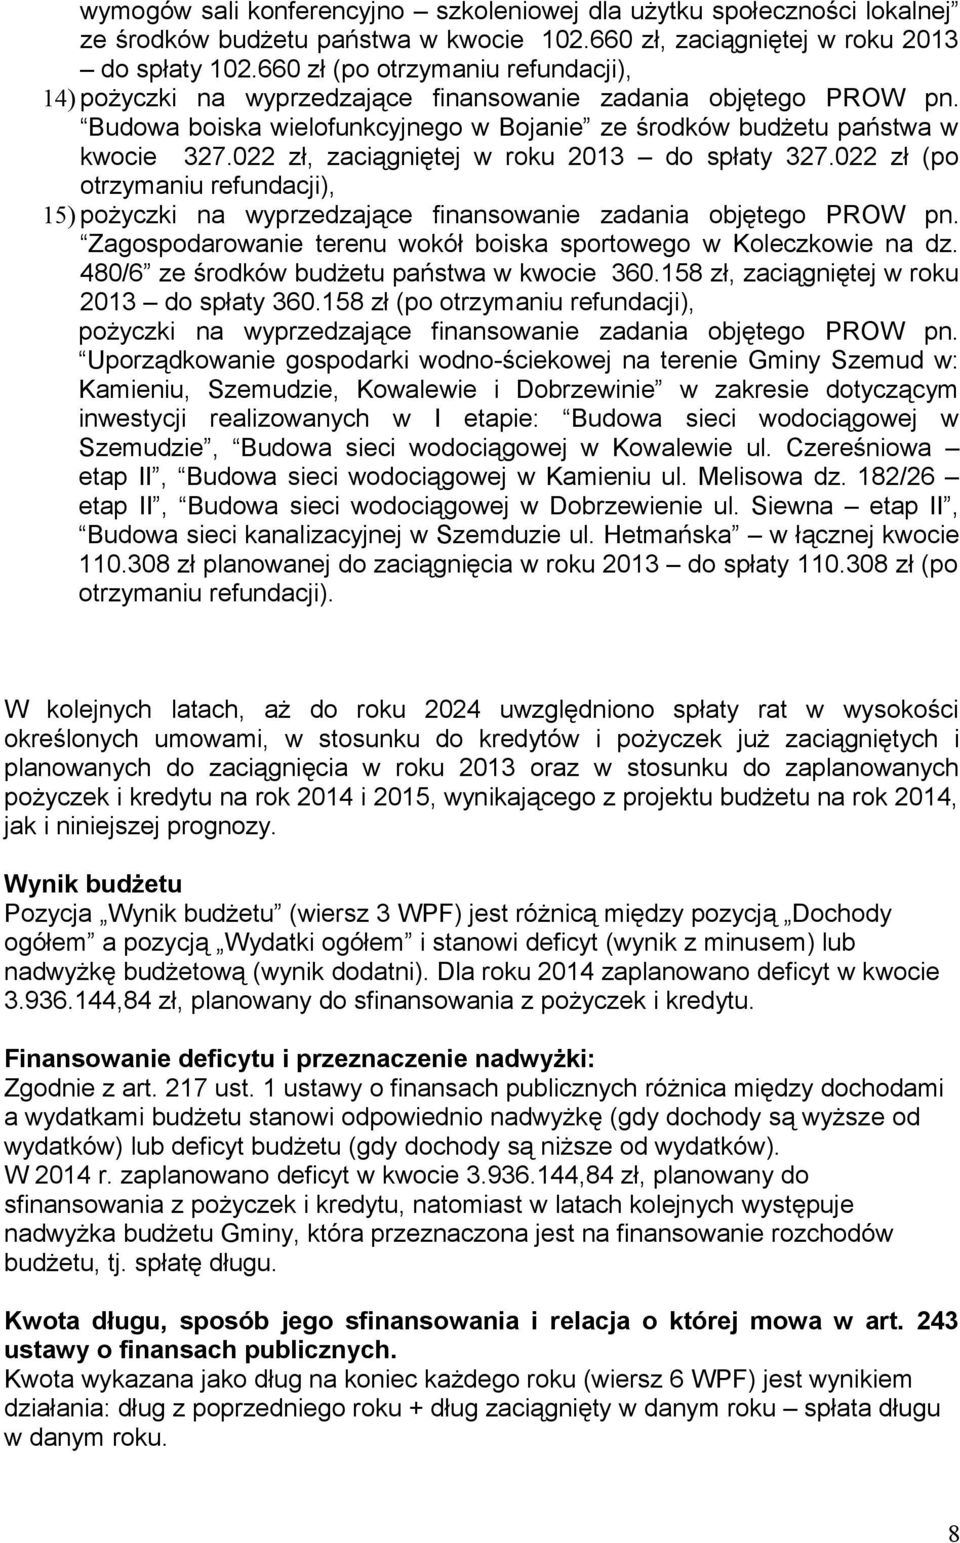 022 zł, zaciągniętej w roku 2013 do spłaty 327.022 zł (po otrzymaniu refundacji), 15) pożyczki na finansowanie zadania objętego PROW pn.